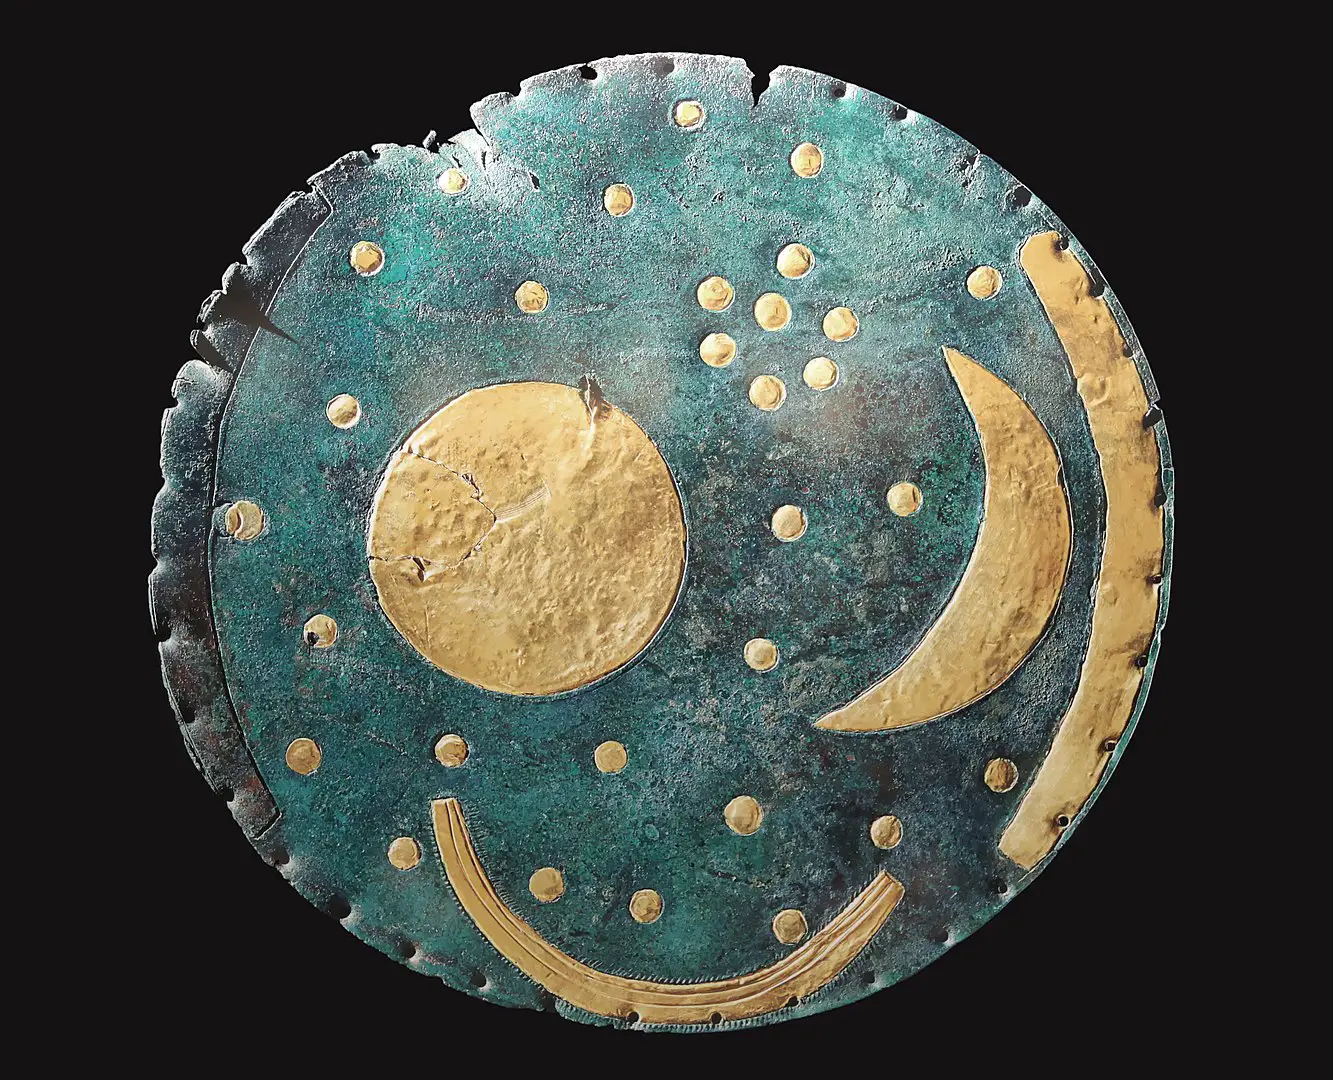 Los Misterios del Disco de Nebra, el mapa astronómico más antiguo jamás descubierto